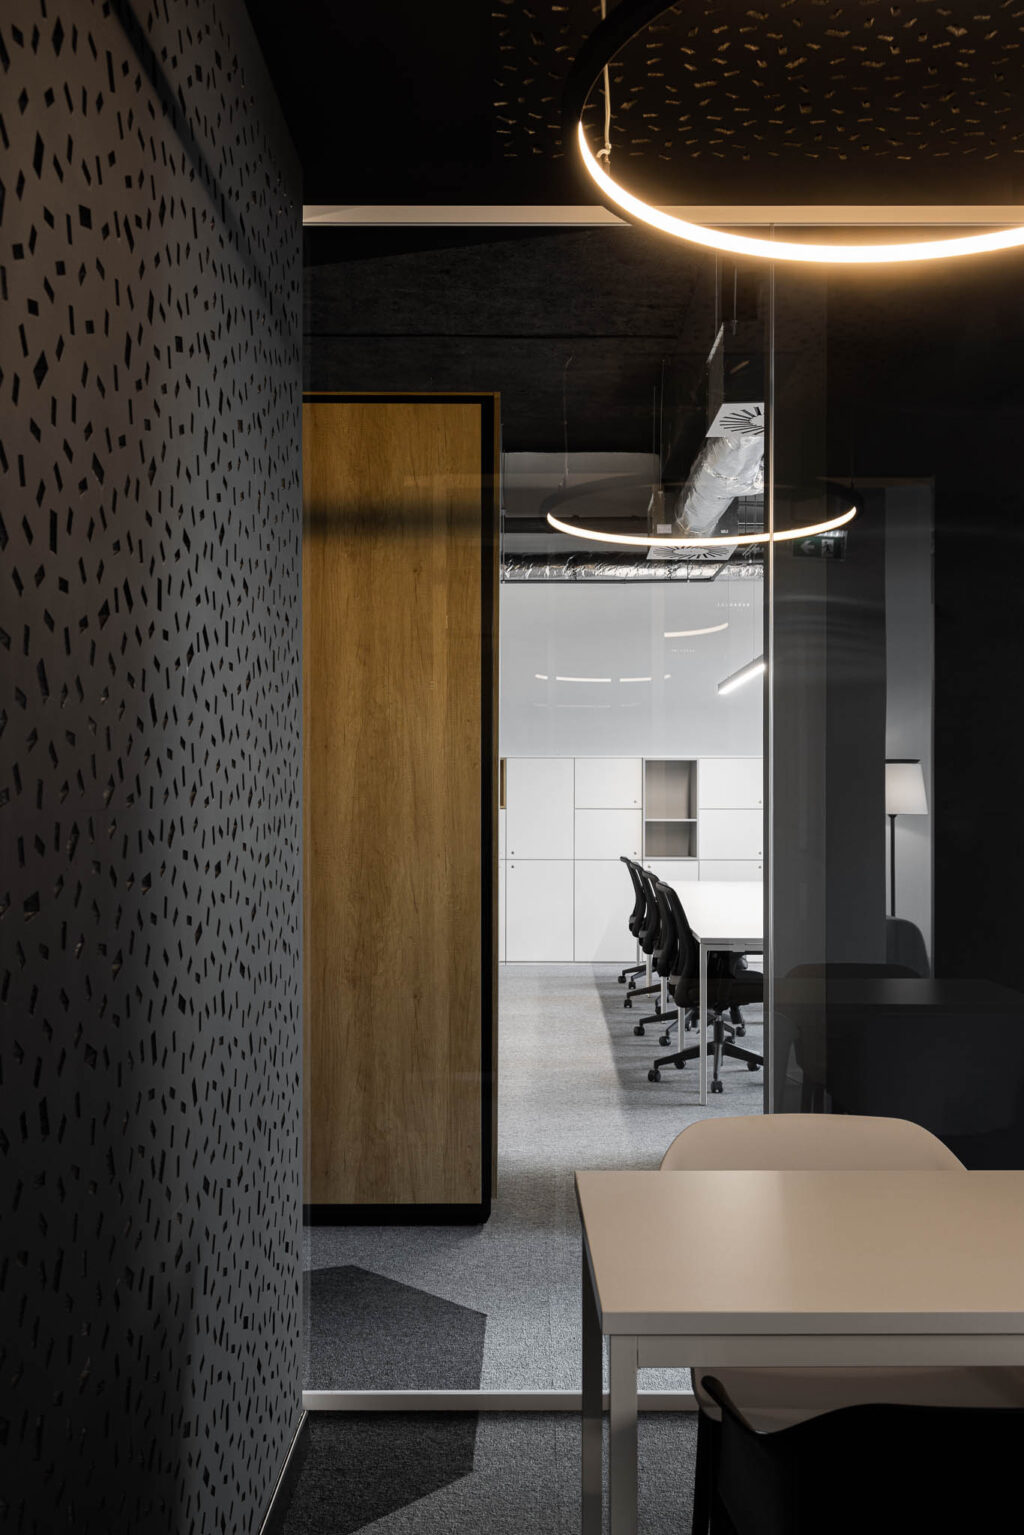 Το Bold by Devoteam στο Πόρτο είναι ένα γραφείο που αντικατοπτρίζει την ταυτότητα της πόλης και την ουσία της εταιρείας. Inception Architects Studio